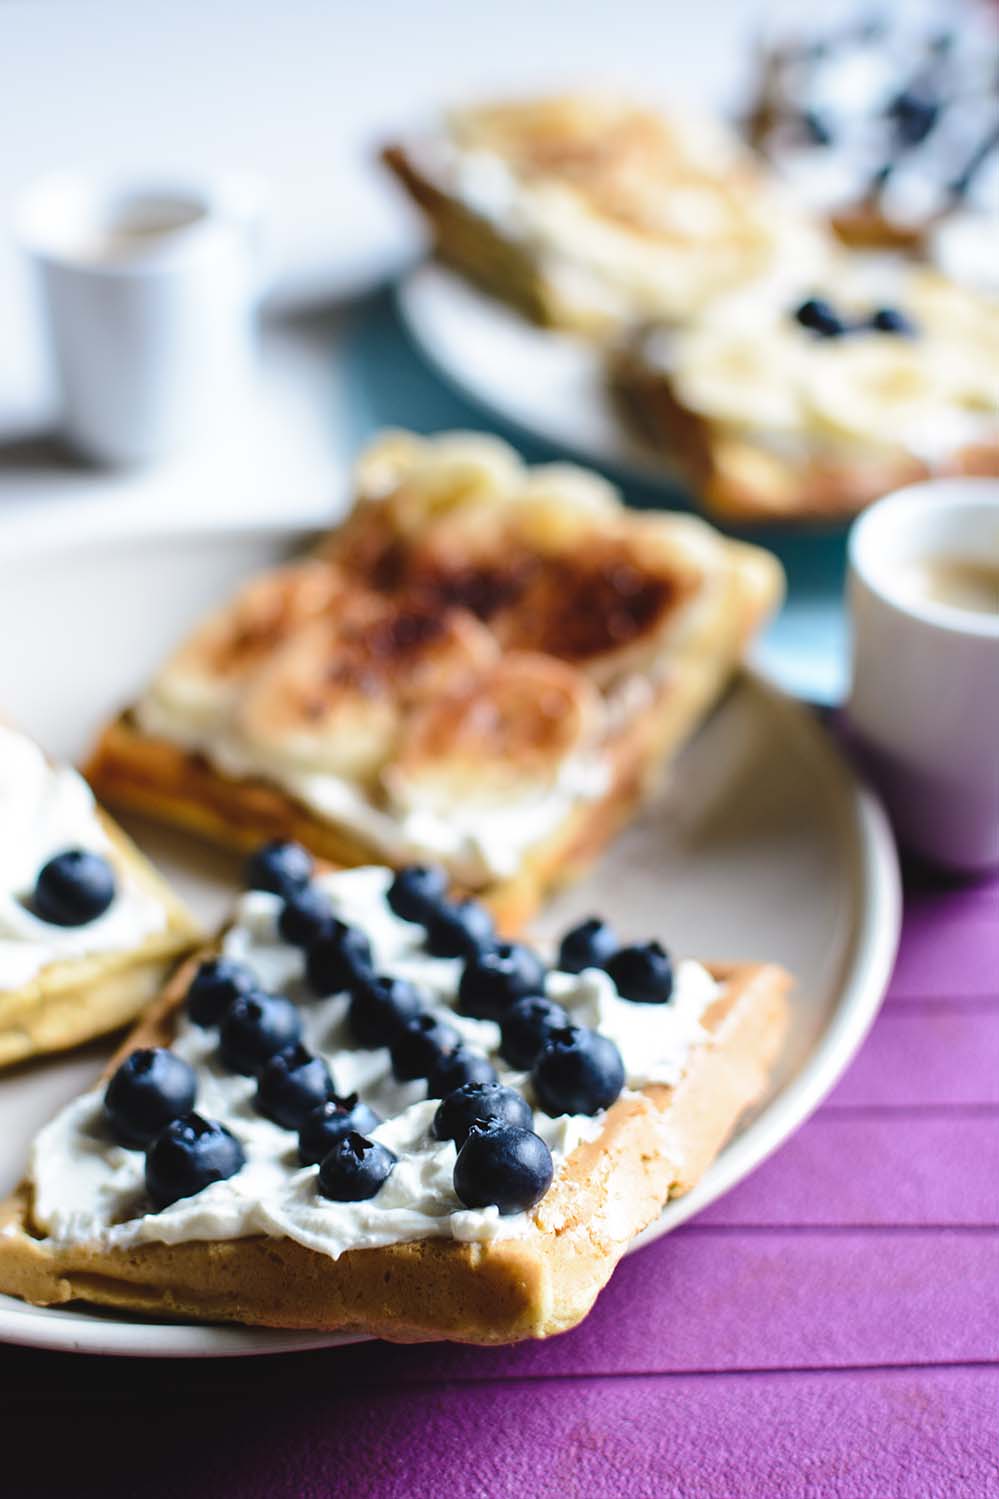 香蕉 蓝莓 华夫饼 浓咖啡 西餐 轻食 快餐 banana-and-bluberries-waffles-with-espresso